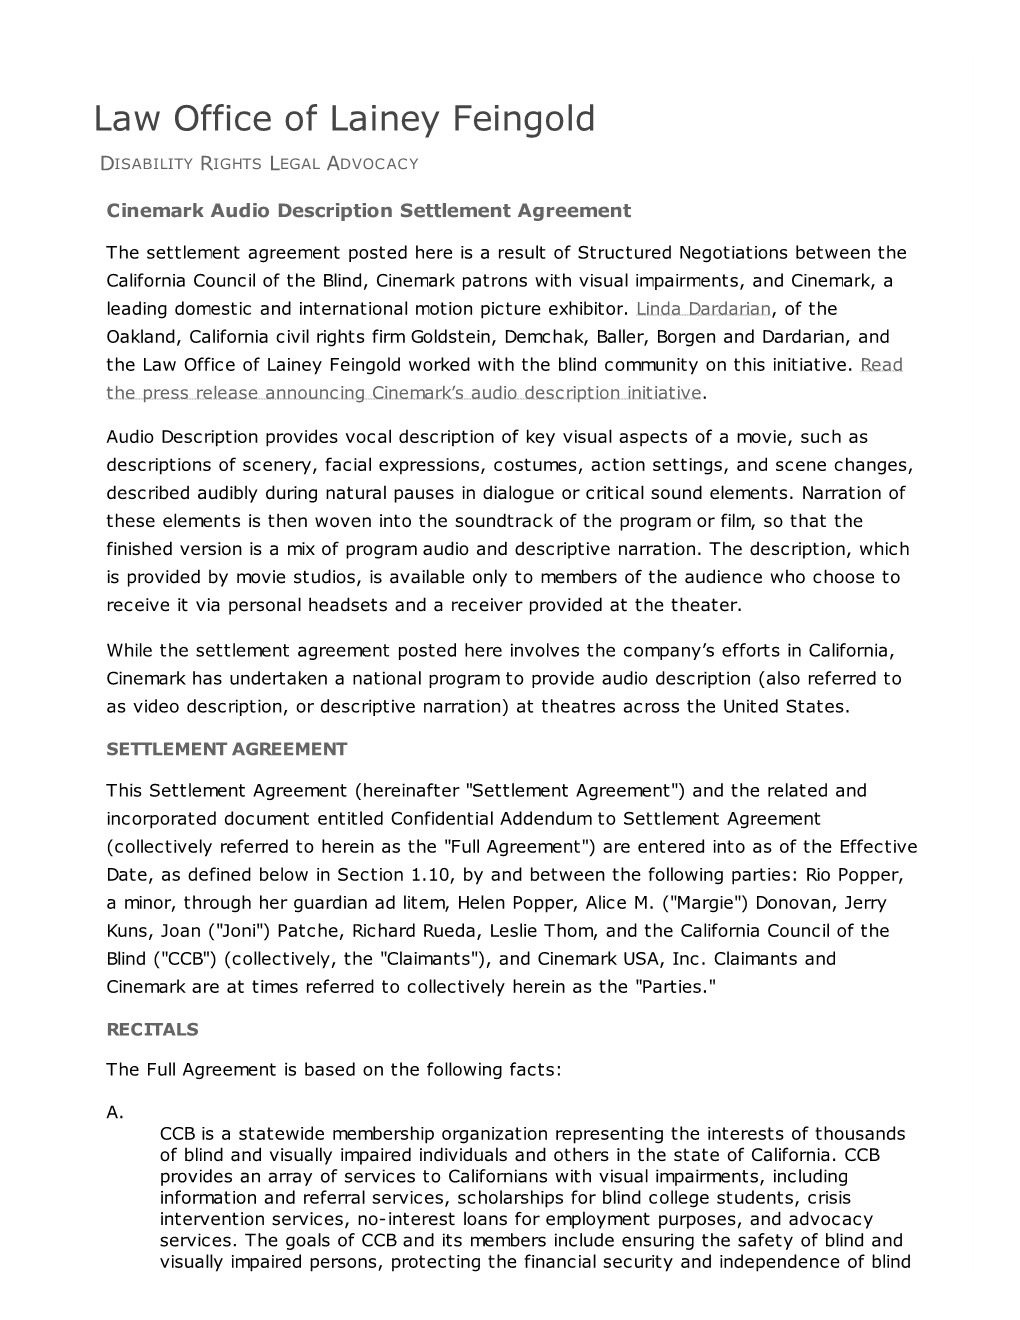 Cinemark Audio Description Settlement Agreement